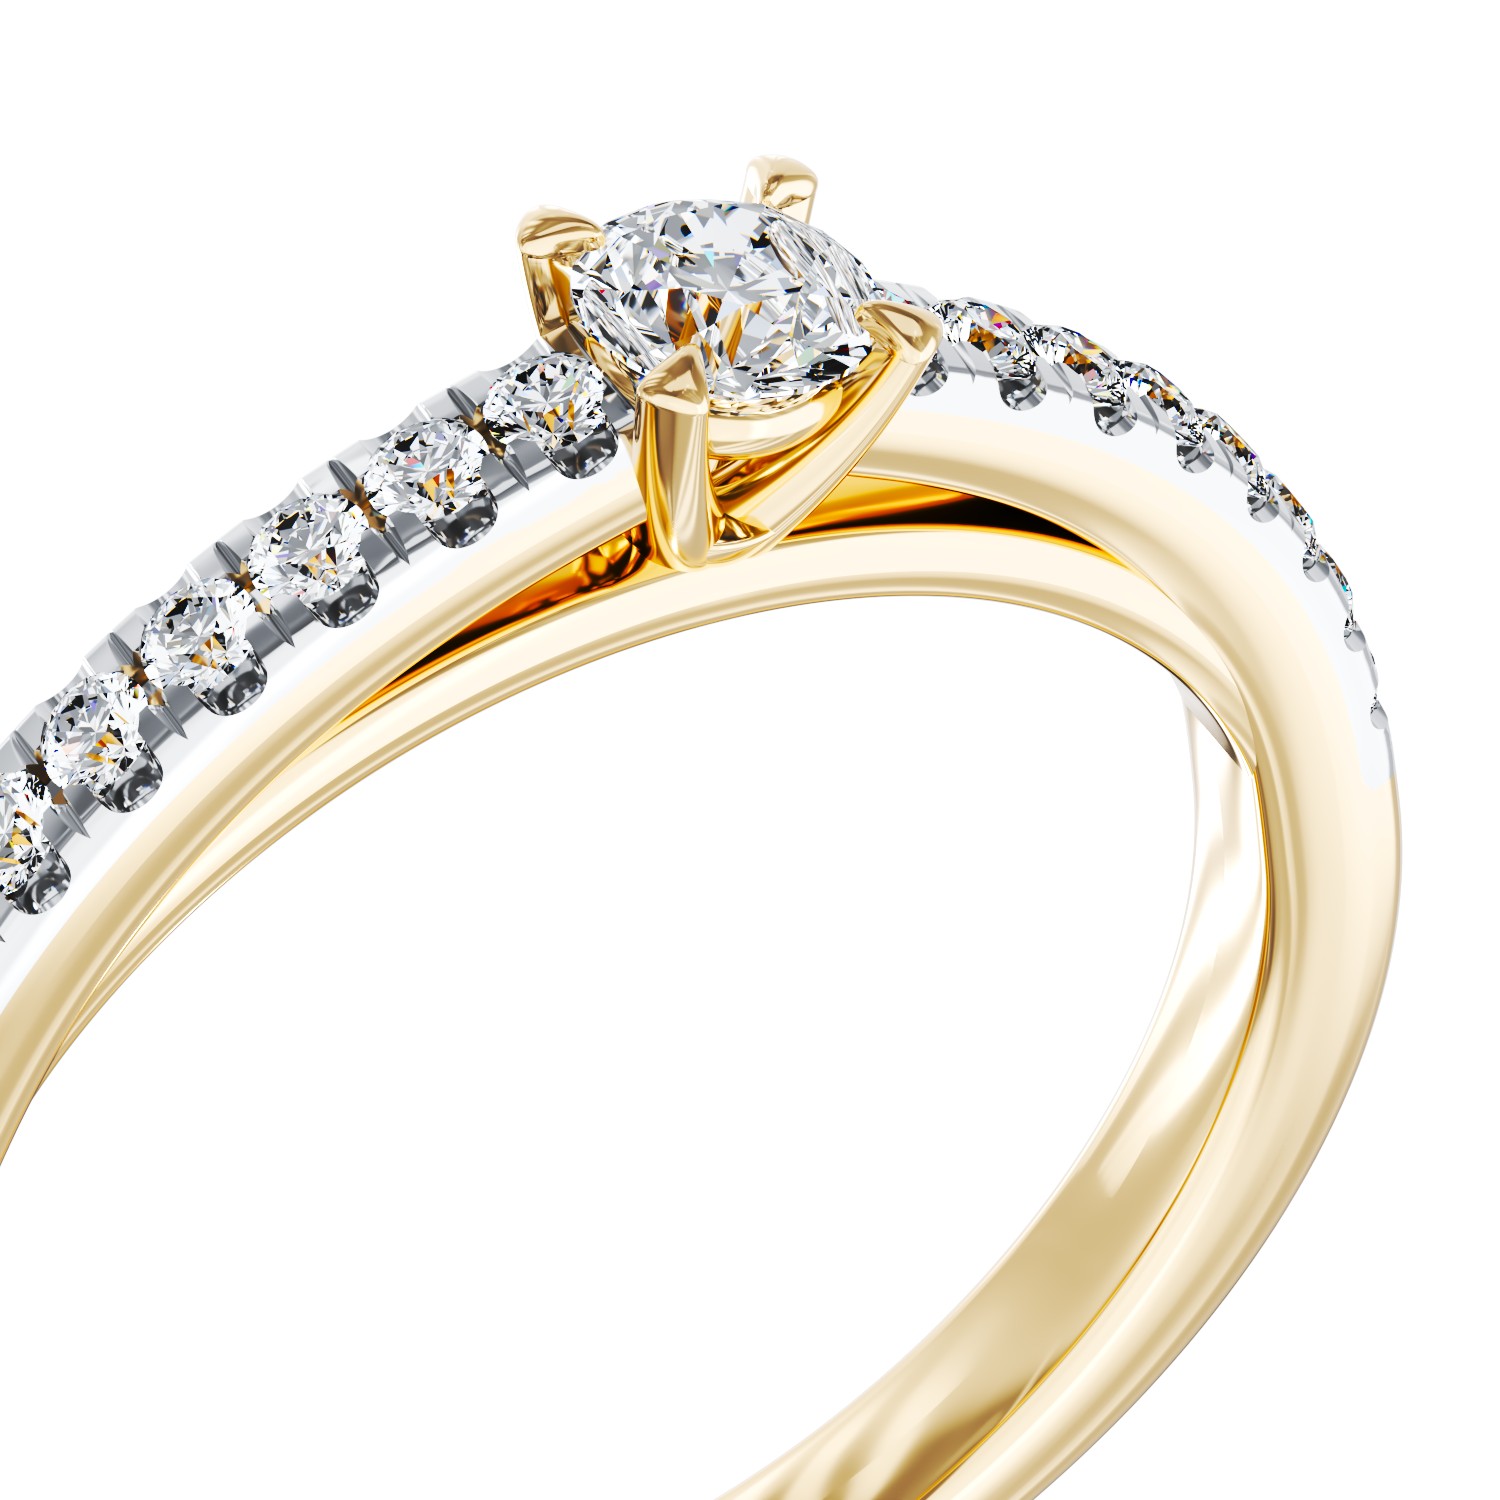 Eljegyzési gyűrű 18K-os sárga aranyból 0,115ct gyémánttal és 0,15ct gyémánttal. Gramm: 2,14